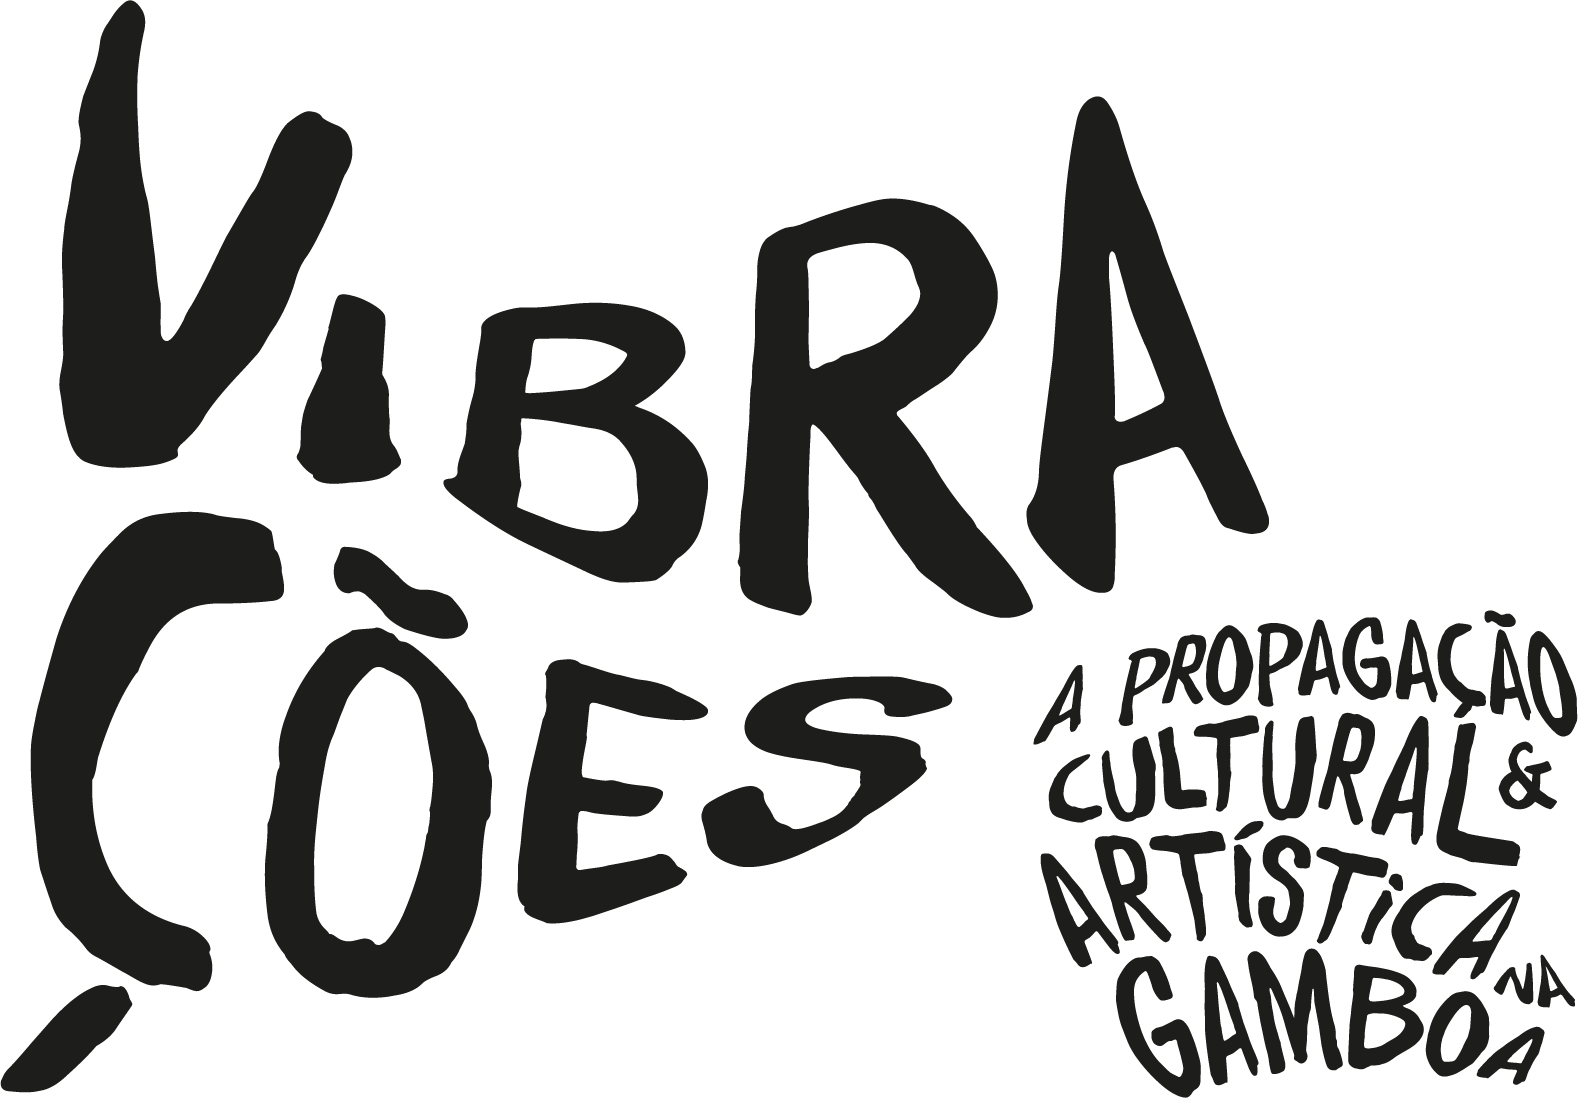 VIBRAÇÕES: A propagação artística e cultura na Gamboa